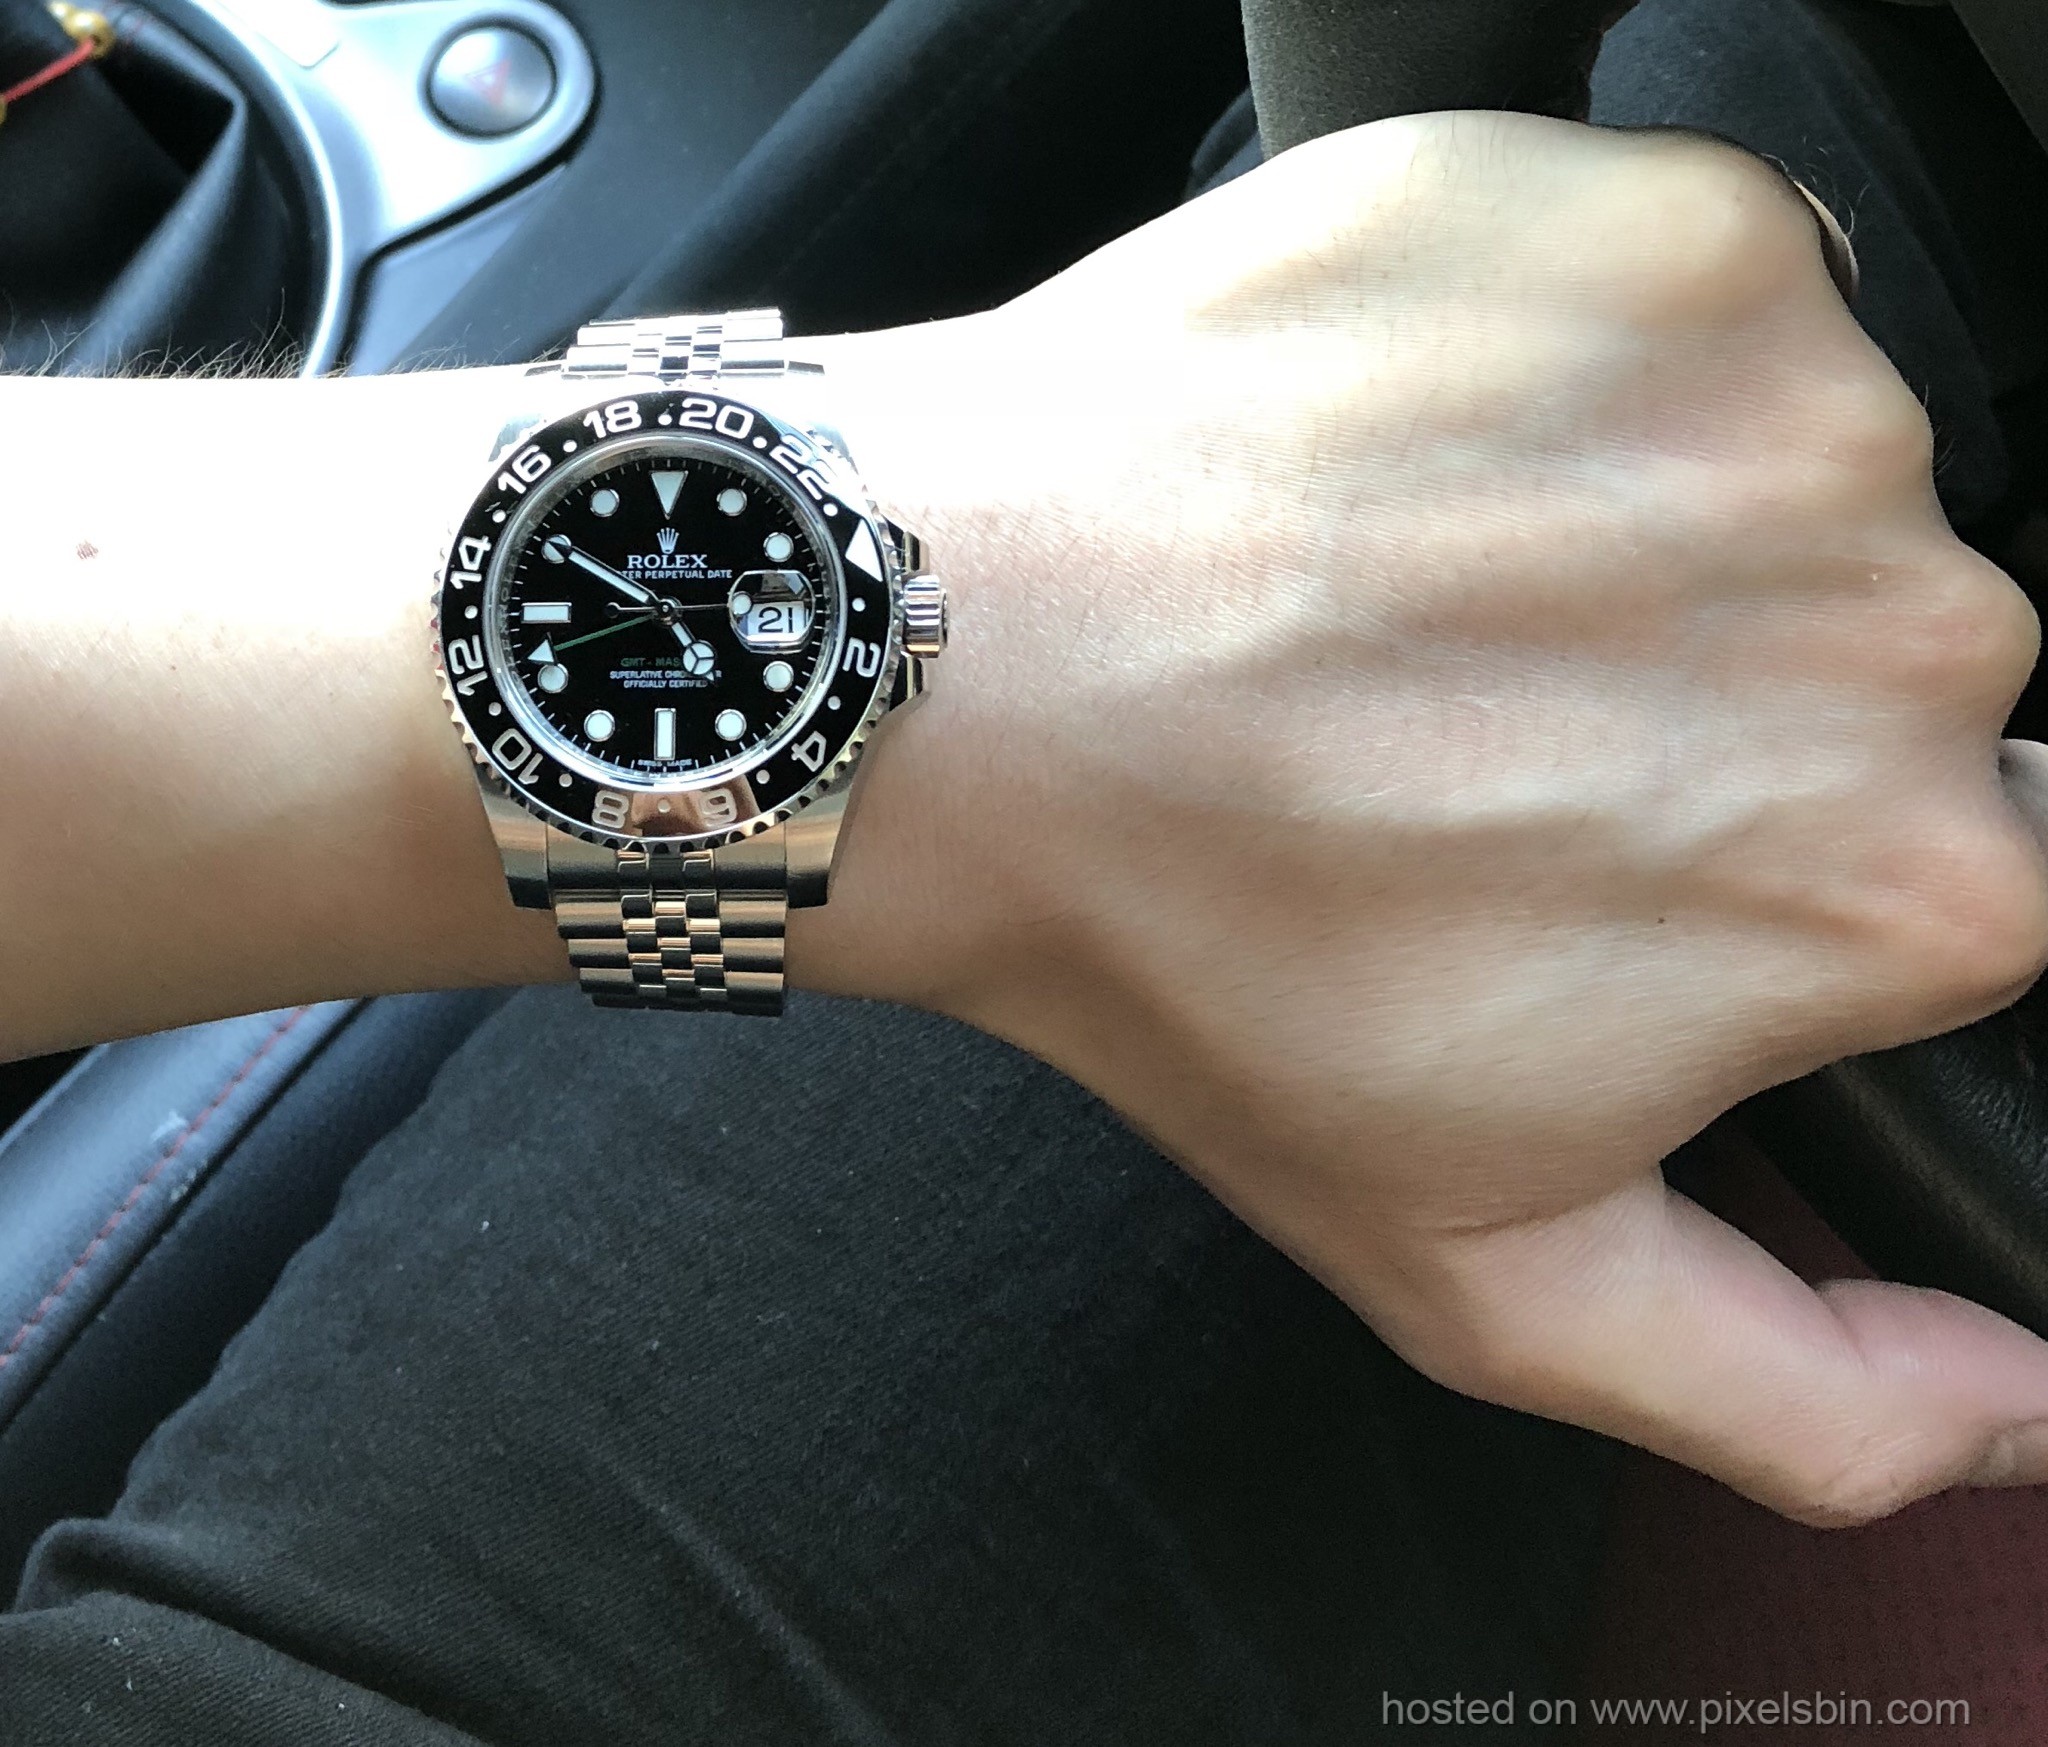 Super Jubilee bracelet on a 116710LN - Rolex Forums - Rolex Watch Forum